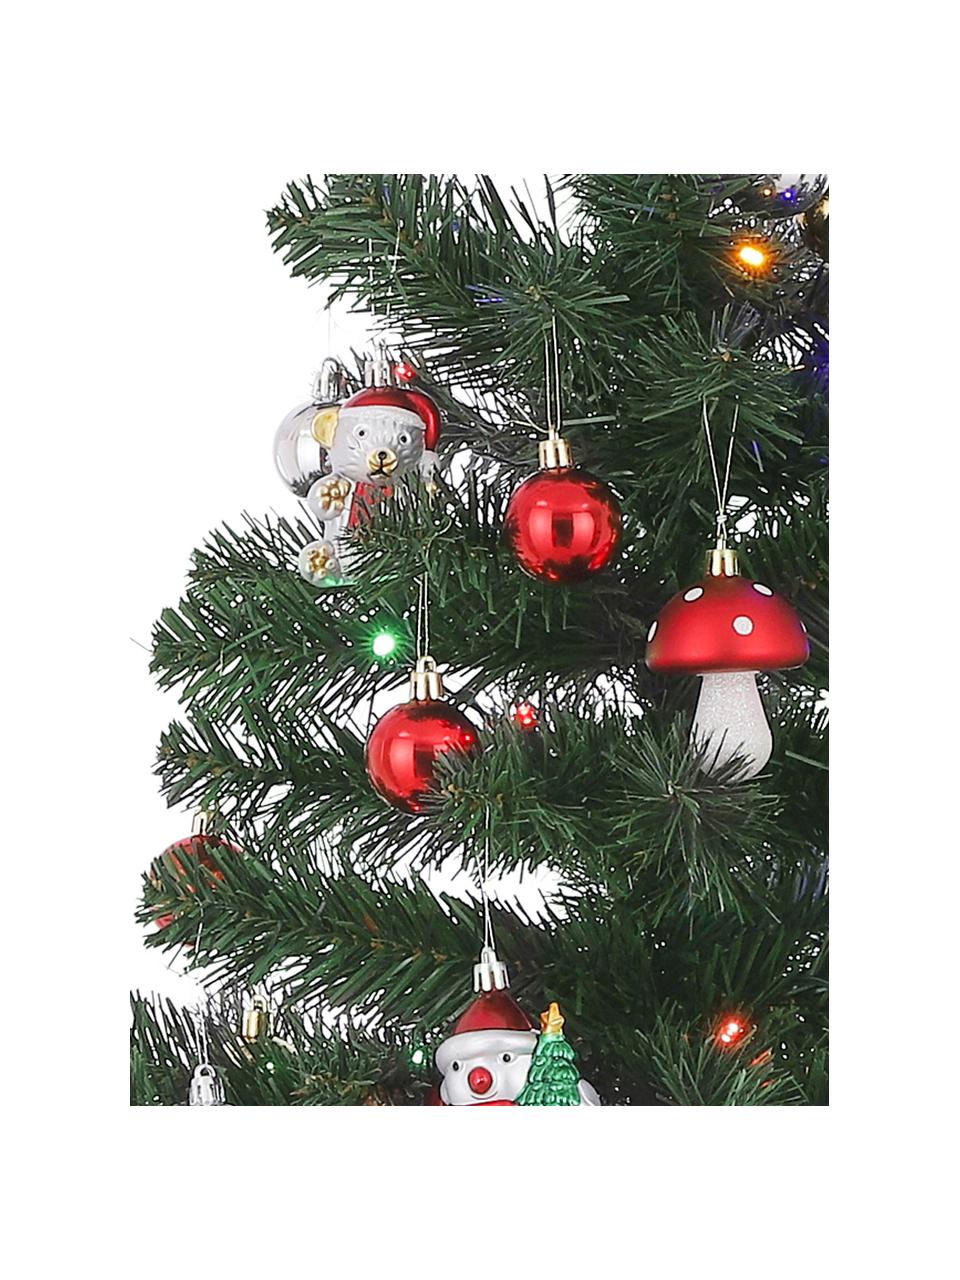 Árbol de Navidad artificial con luces LED Gently, Plástico, Multicolor, Ø 50 x Al 90 cm